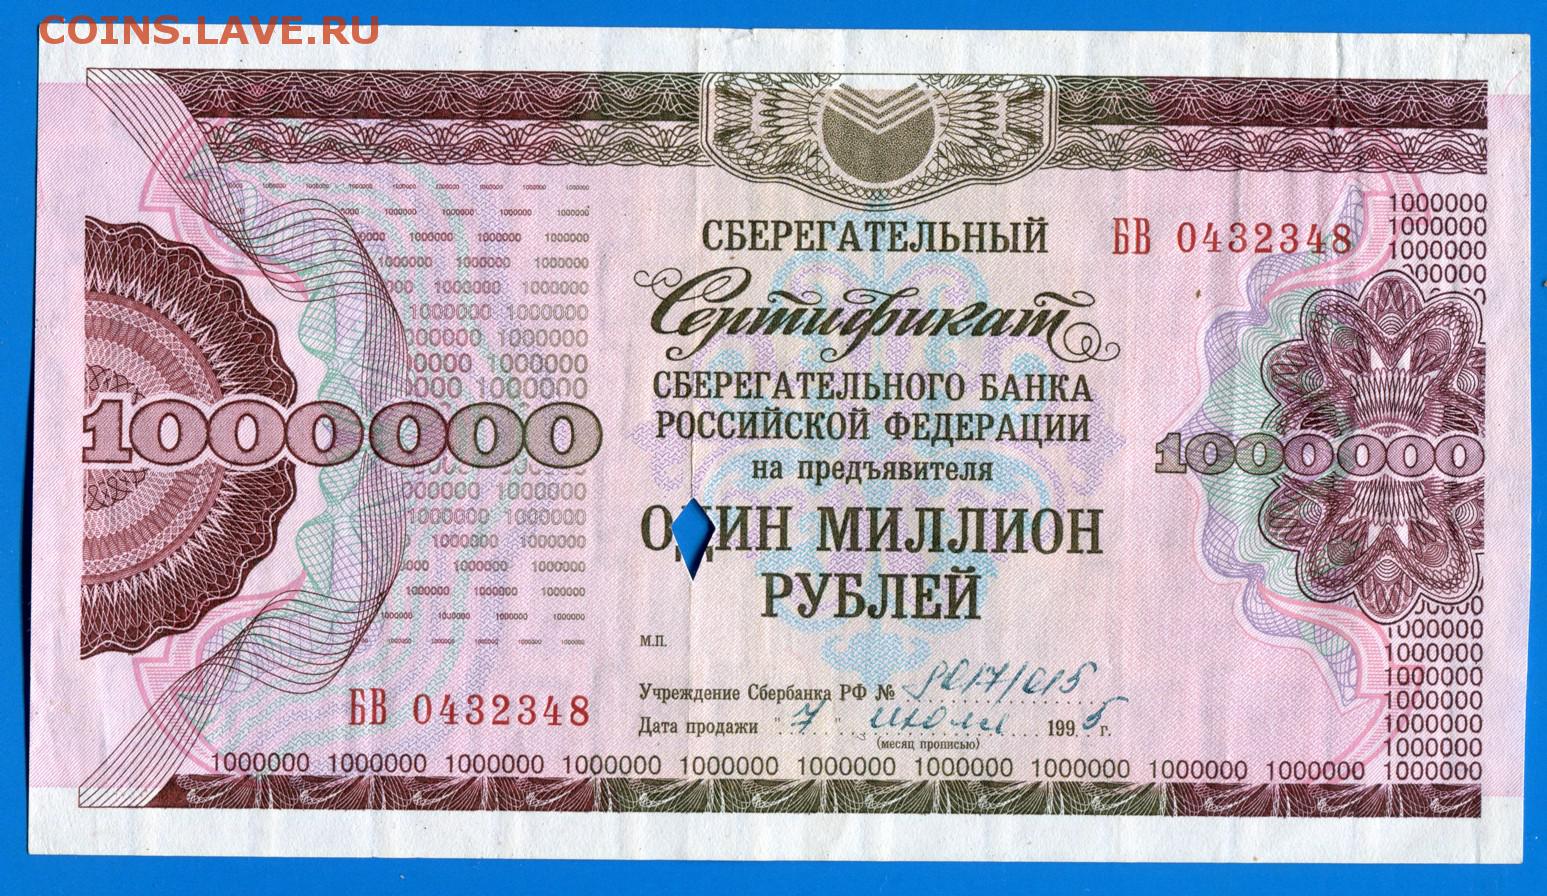 1000000 рублей россии. Сертификат на 1000000 рублей. 1000000 Рублей 1995 года. Купюра 1000000 1995. Купюра 1000000 рублей 1995.